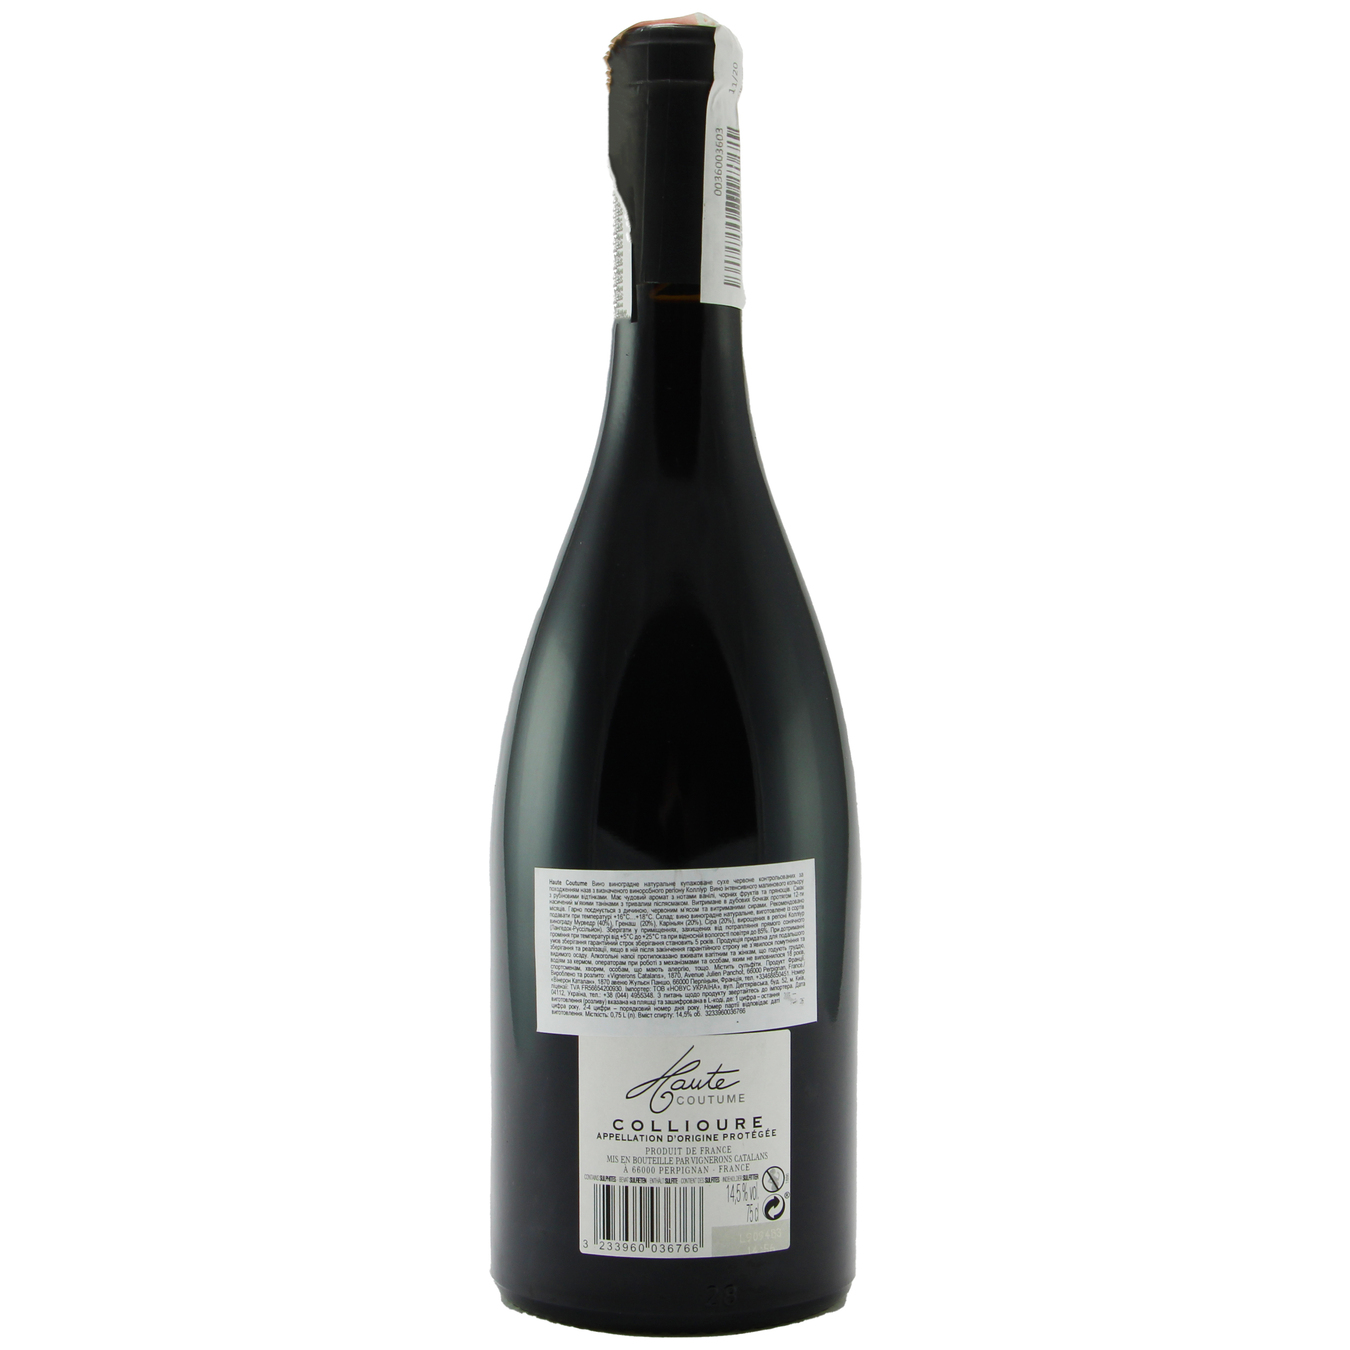 Haute Coutume Collioure red dry wine 13,5% 0,75l 2